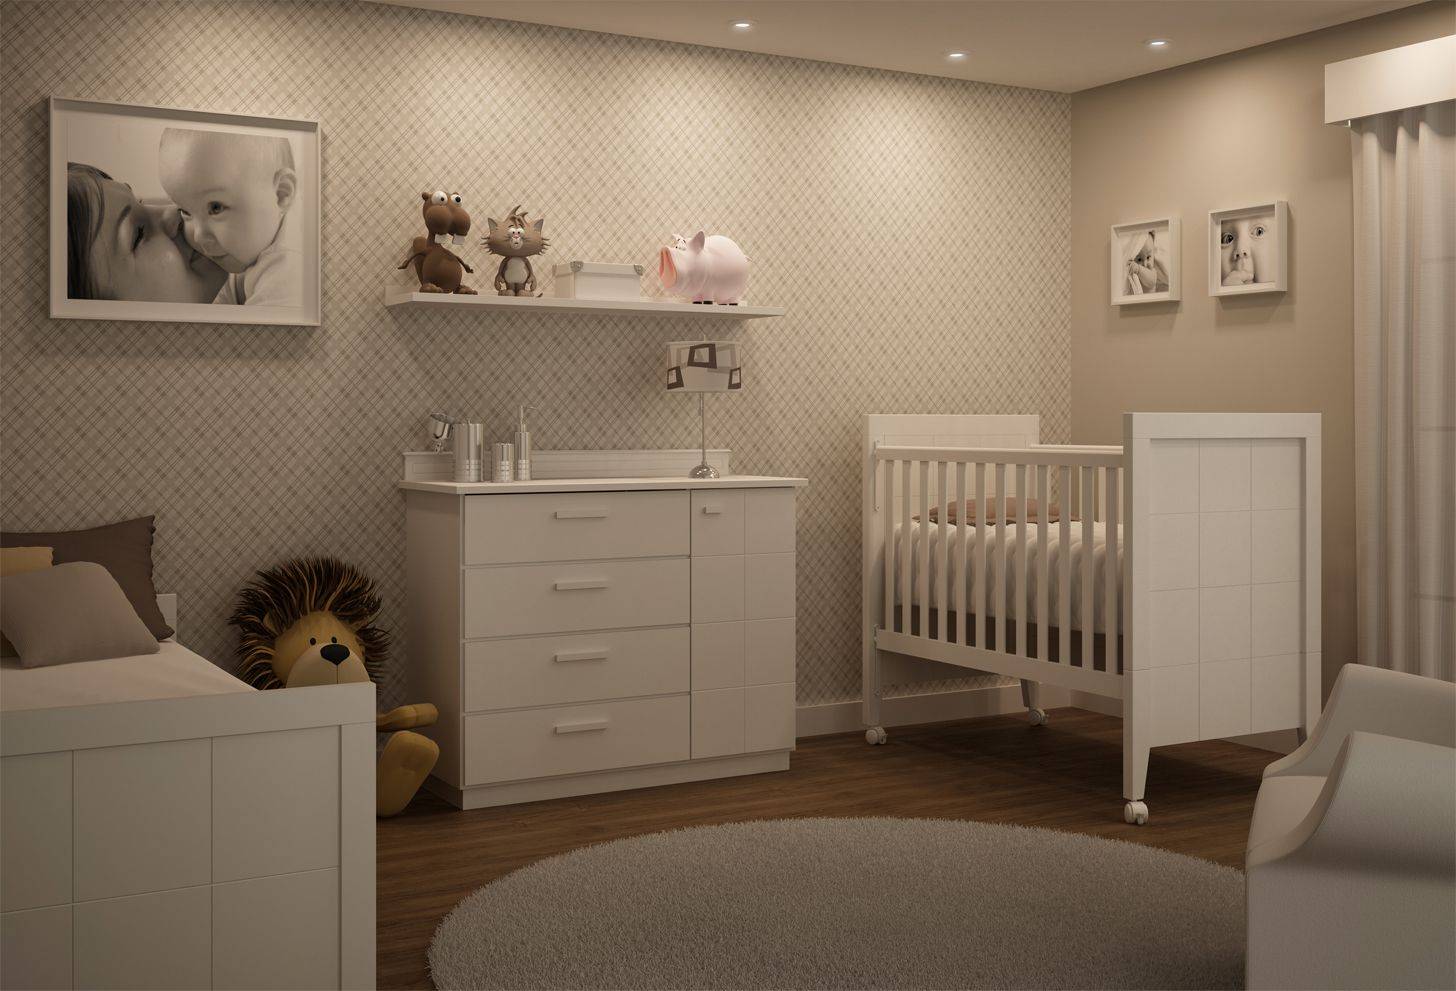 Как подготовить детскую комнату для новорожденного: советы для пап – обустройство